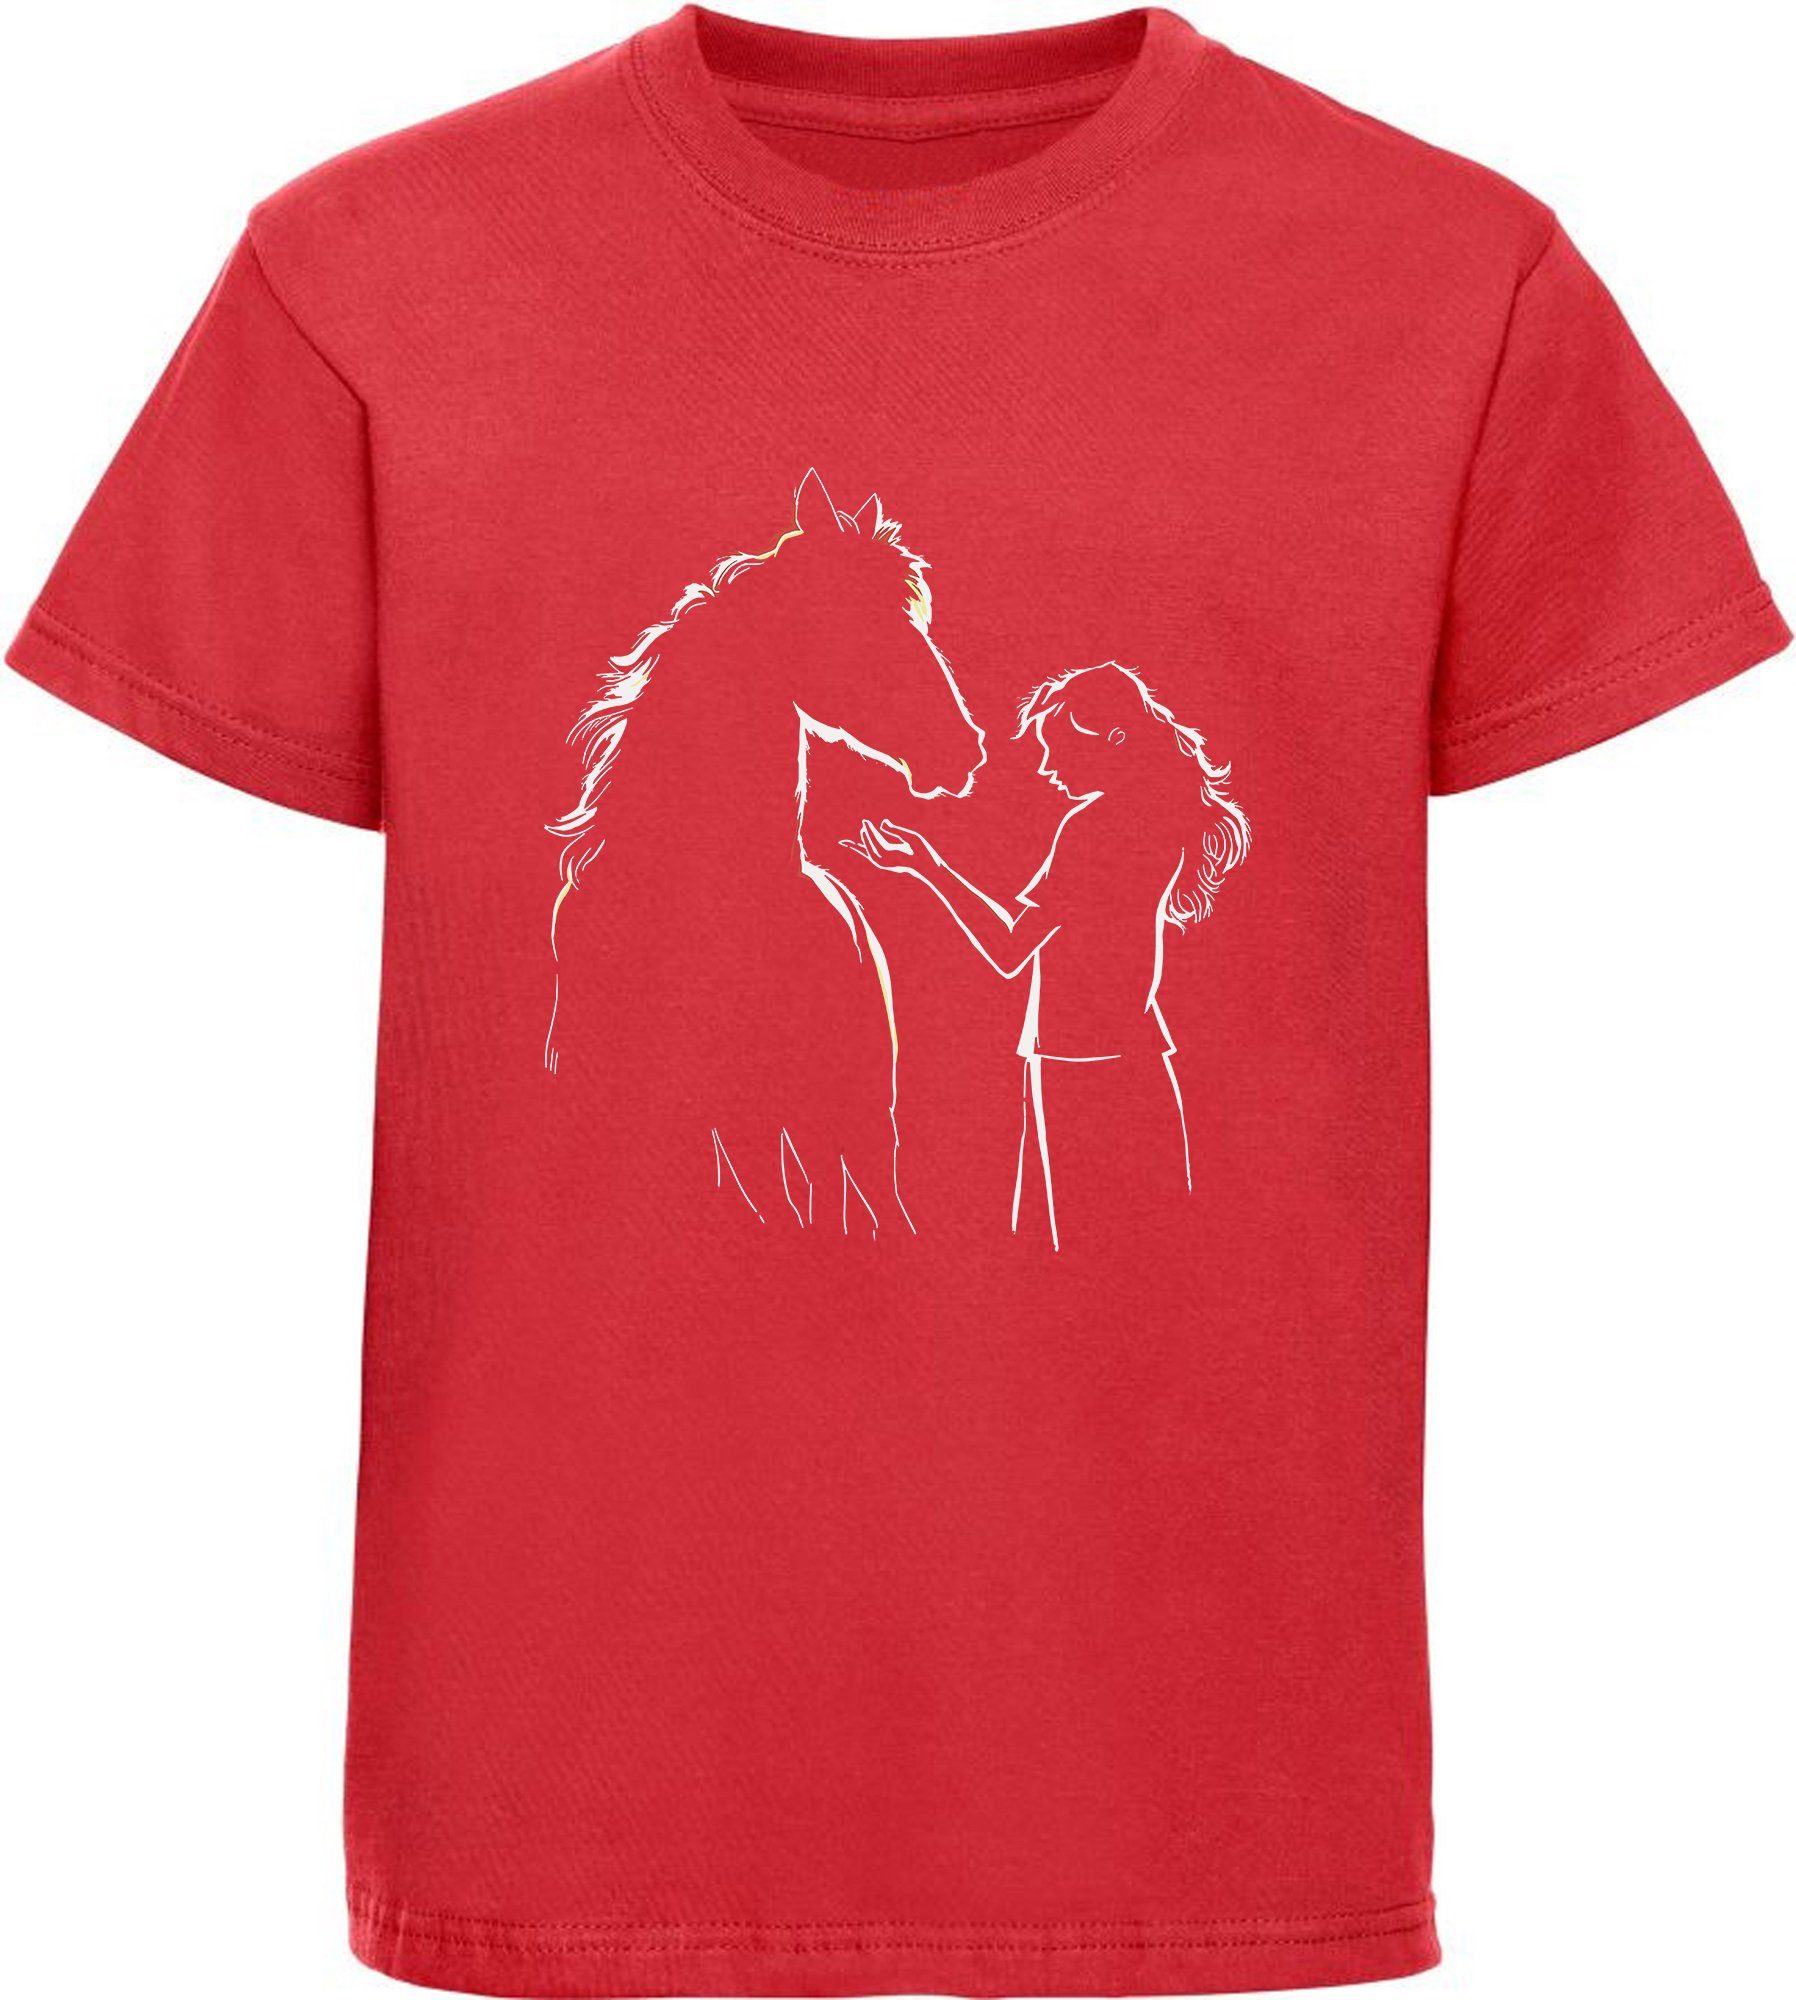 MyDesign24 Print-Shirt bedrucktes Mädchen T-Shirt Pferde Silhouette mit Frau Baumwollshirt mit Aufdruck, i139 rot | T-Shirts